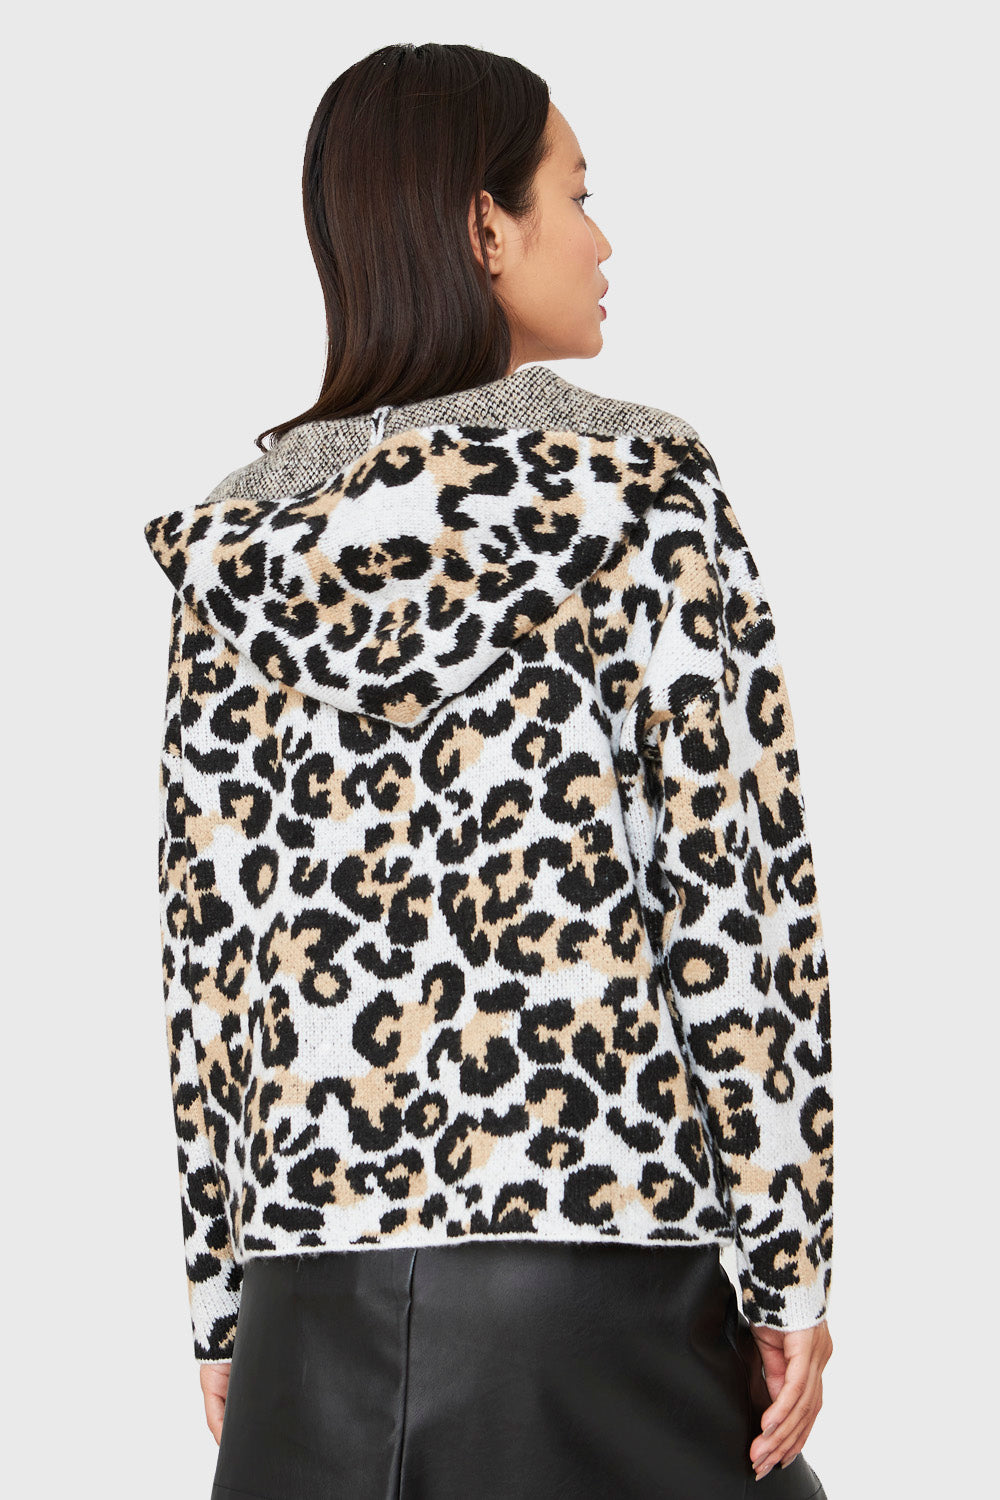 Sweater Leopard Con Gorro Blanco